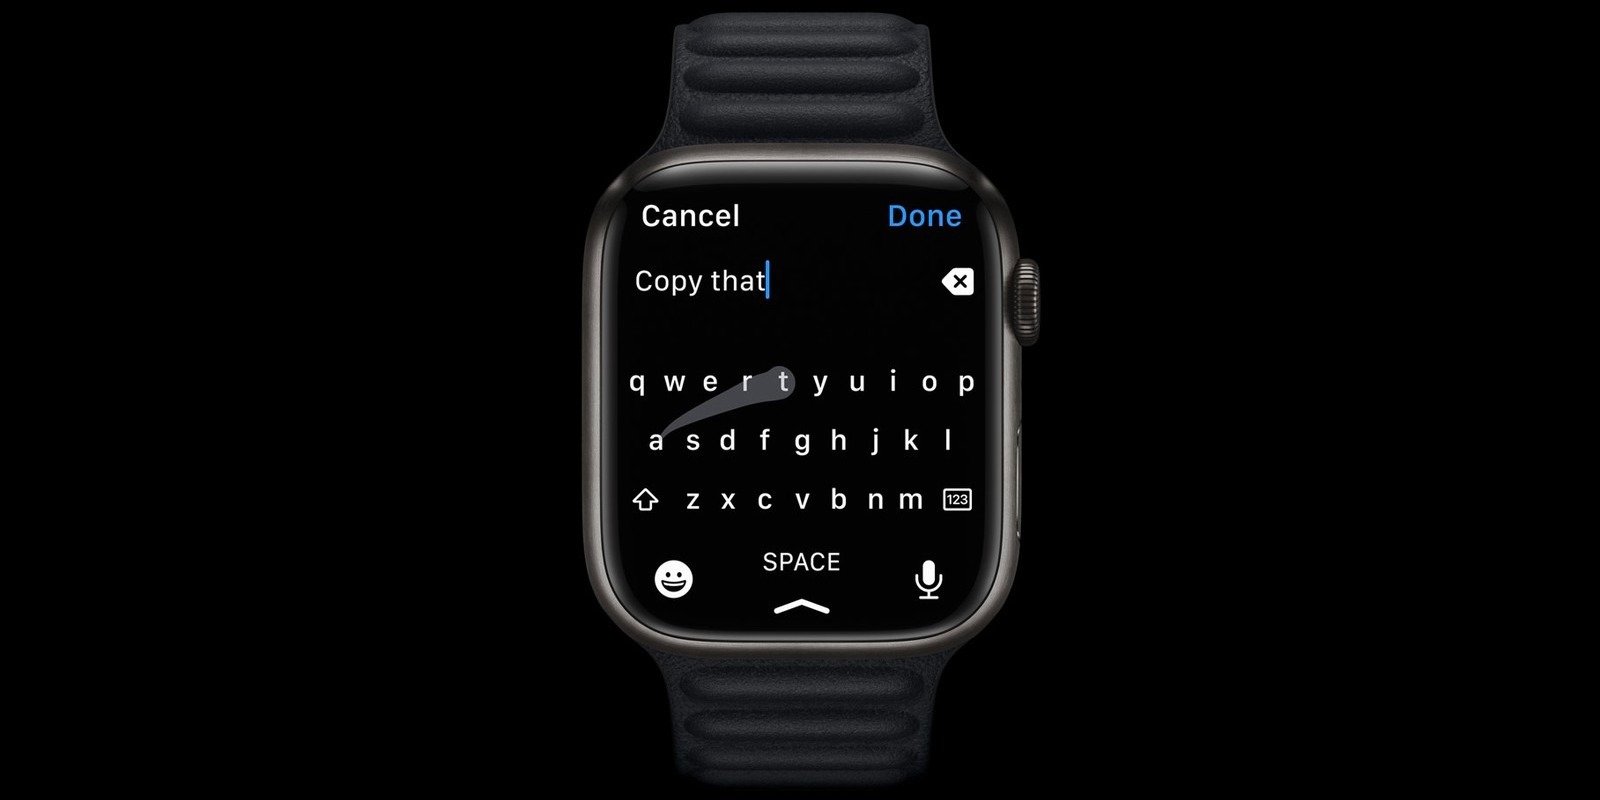 Apple Watch Series 7: увеличенный дисплей с узкими рамками при прежней автономности